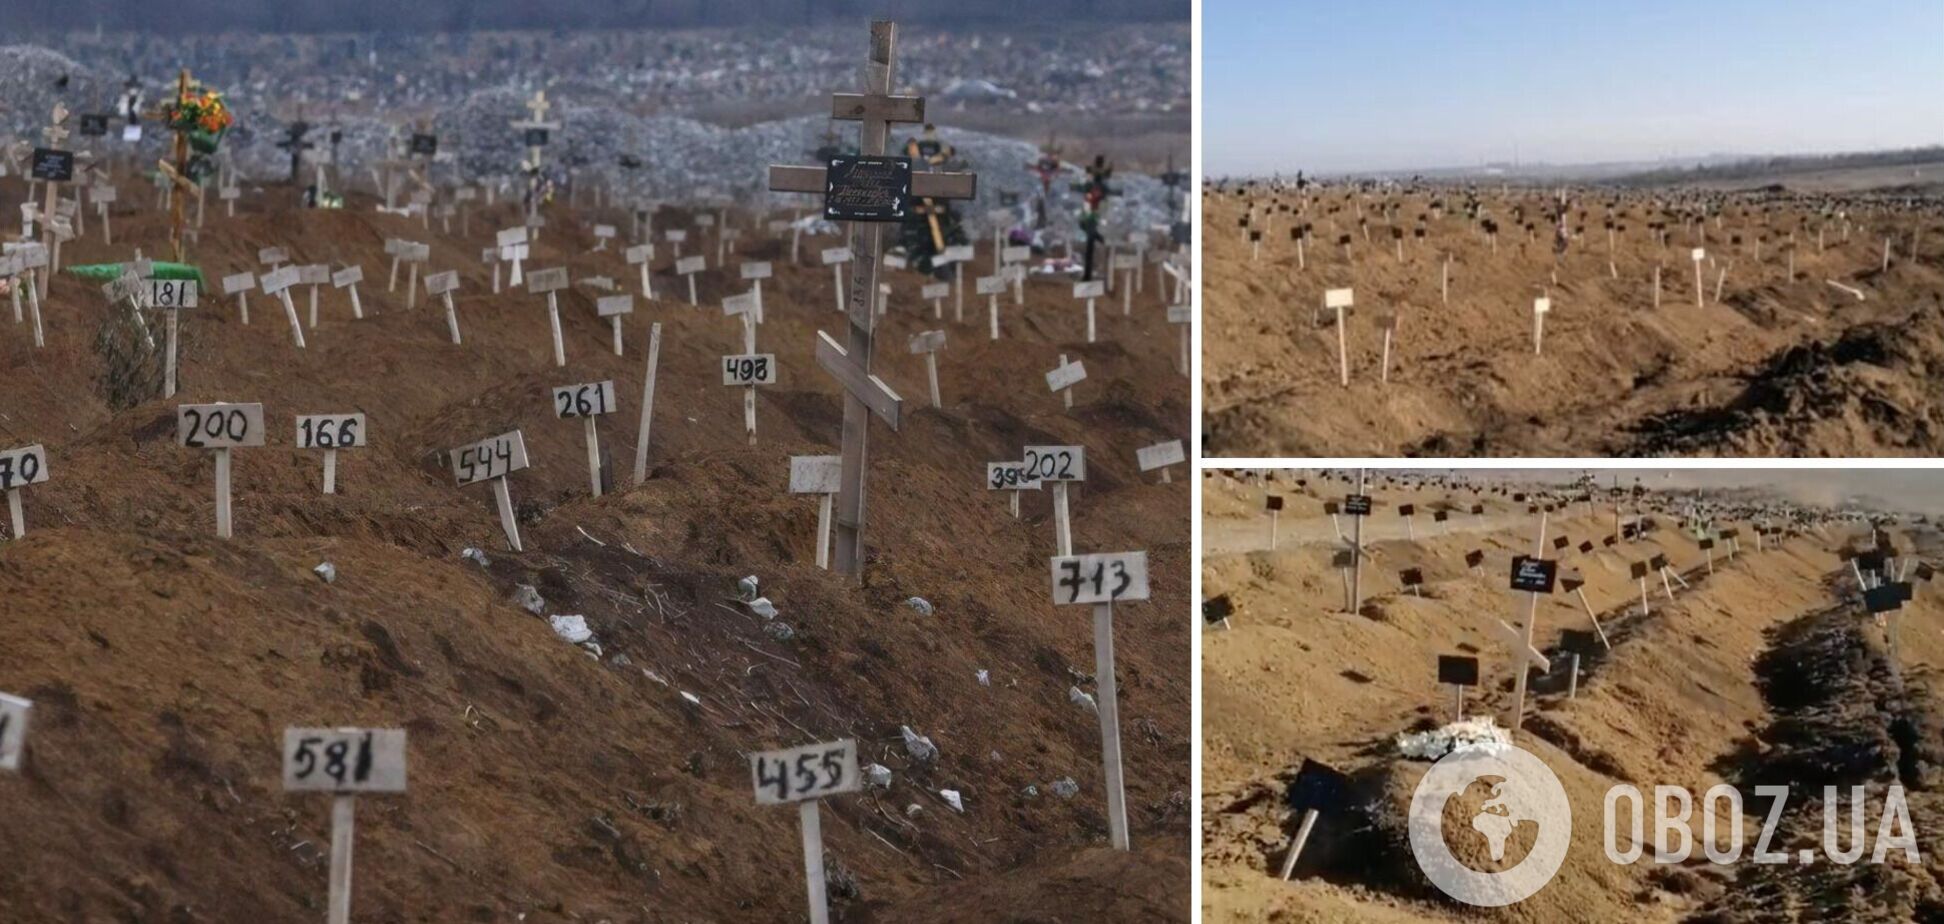 Километры безымянных могил: кладбище в Мариуполе разрослось до ужасающих масштабов. Видео